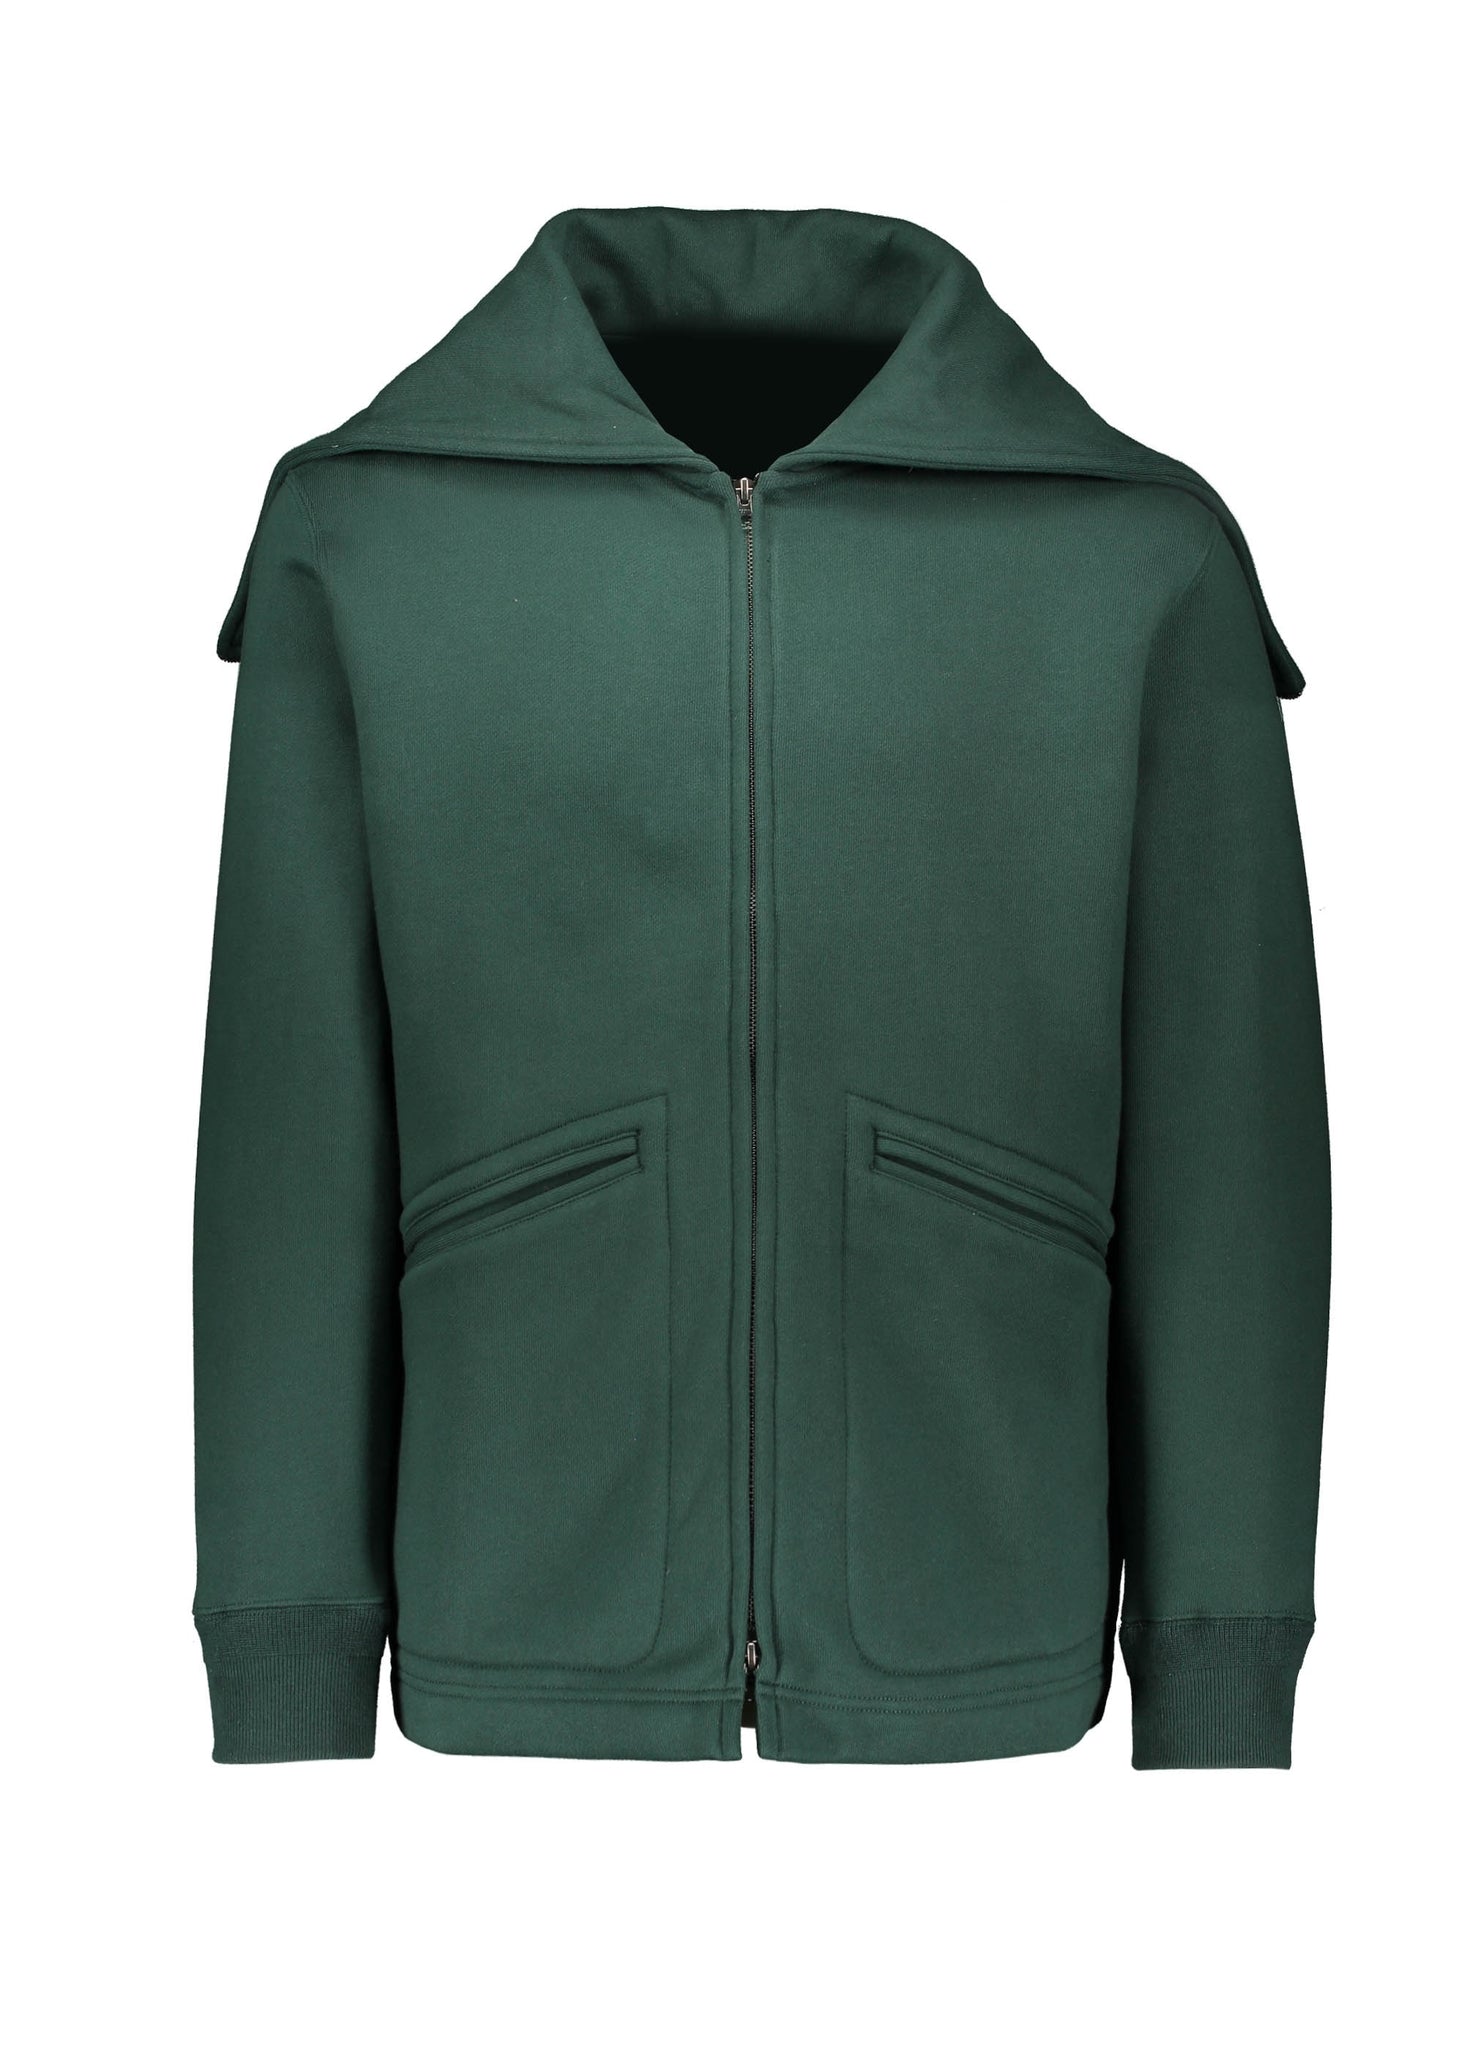 Beams Plus Split Hooded Sweatshirt - Green